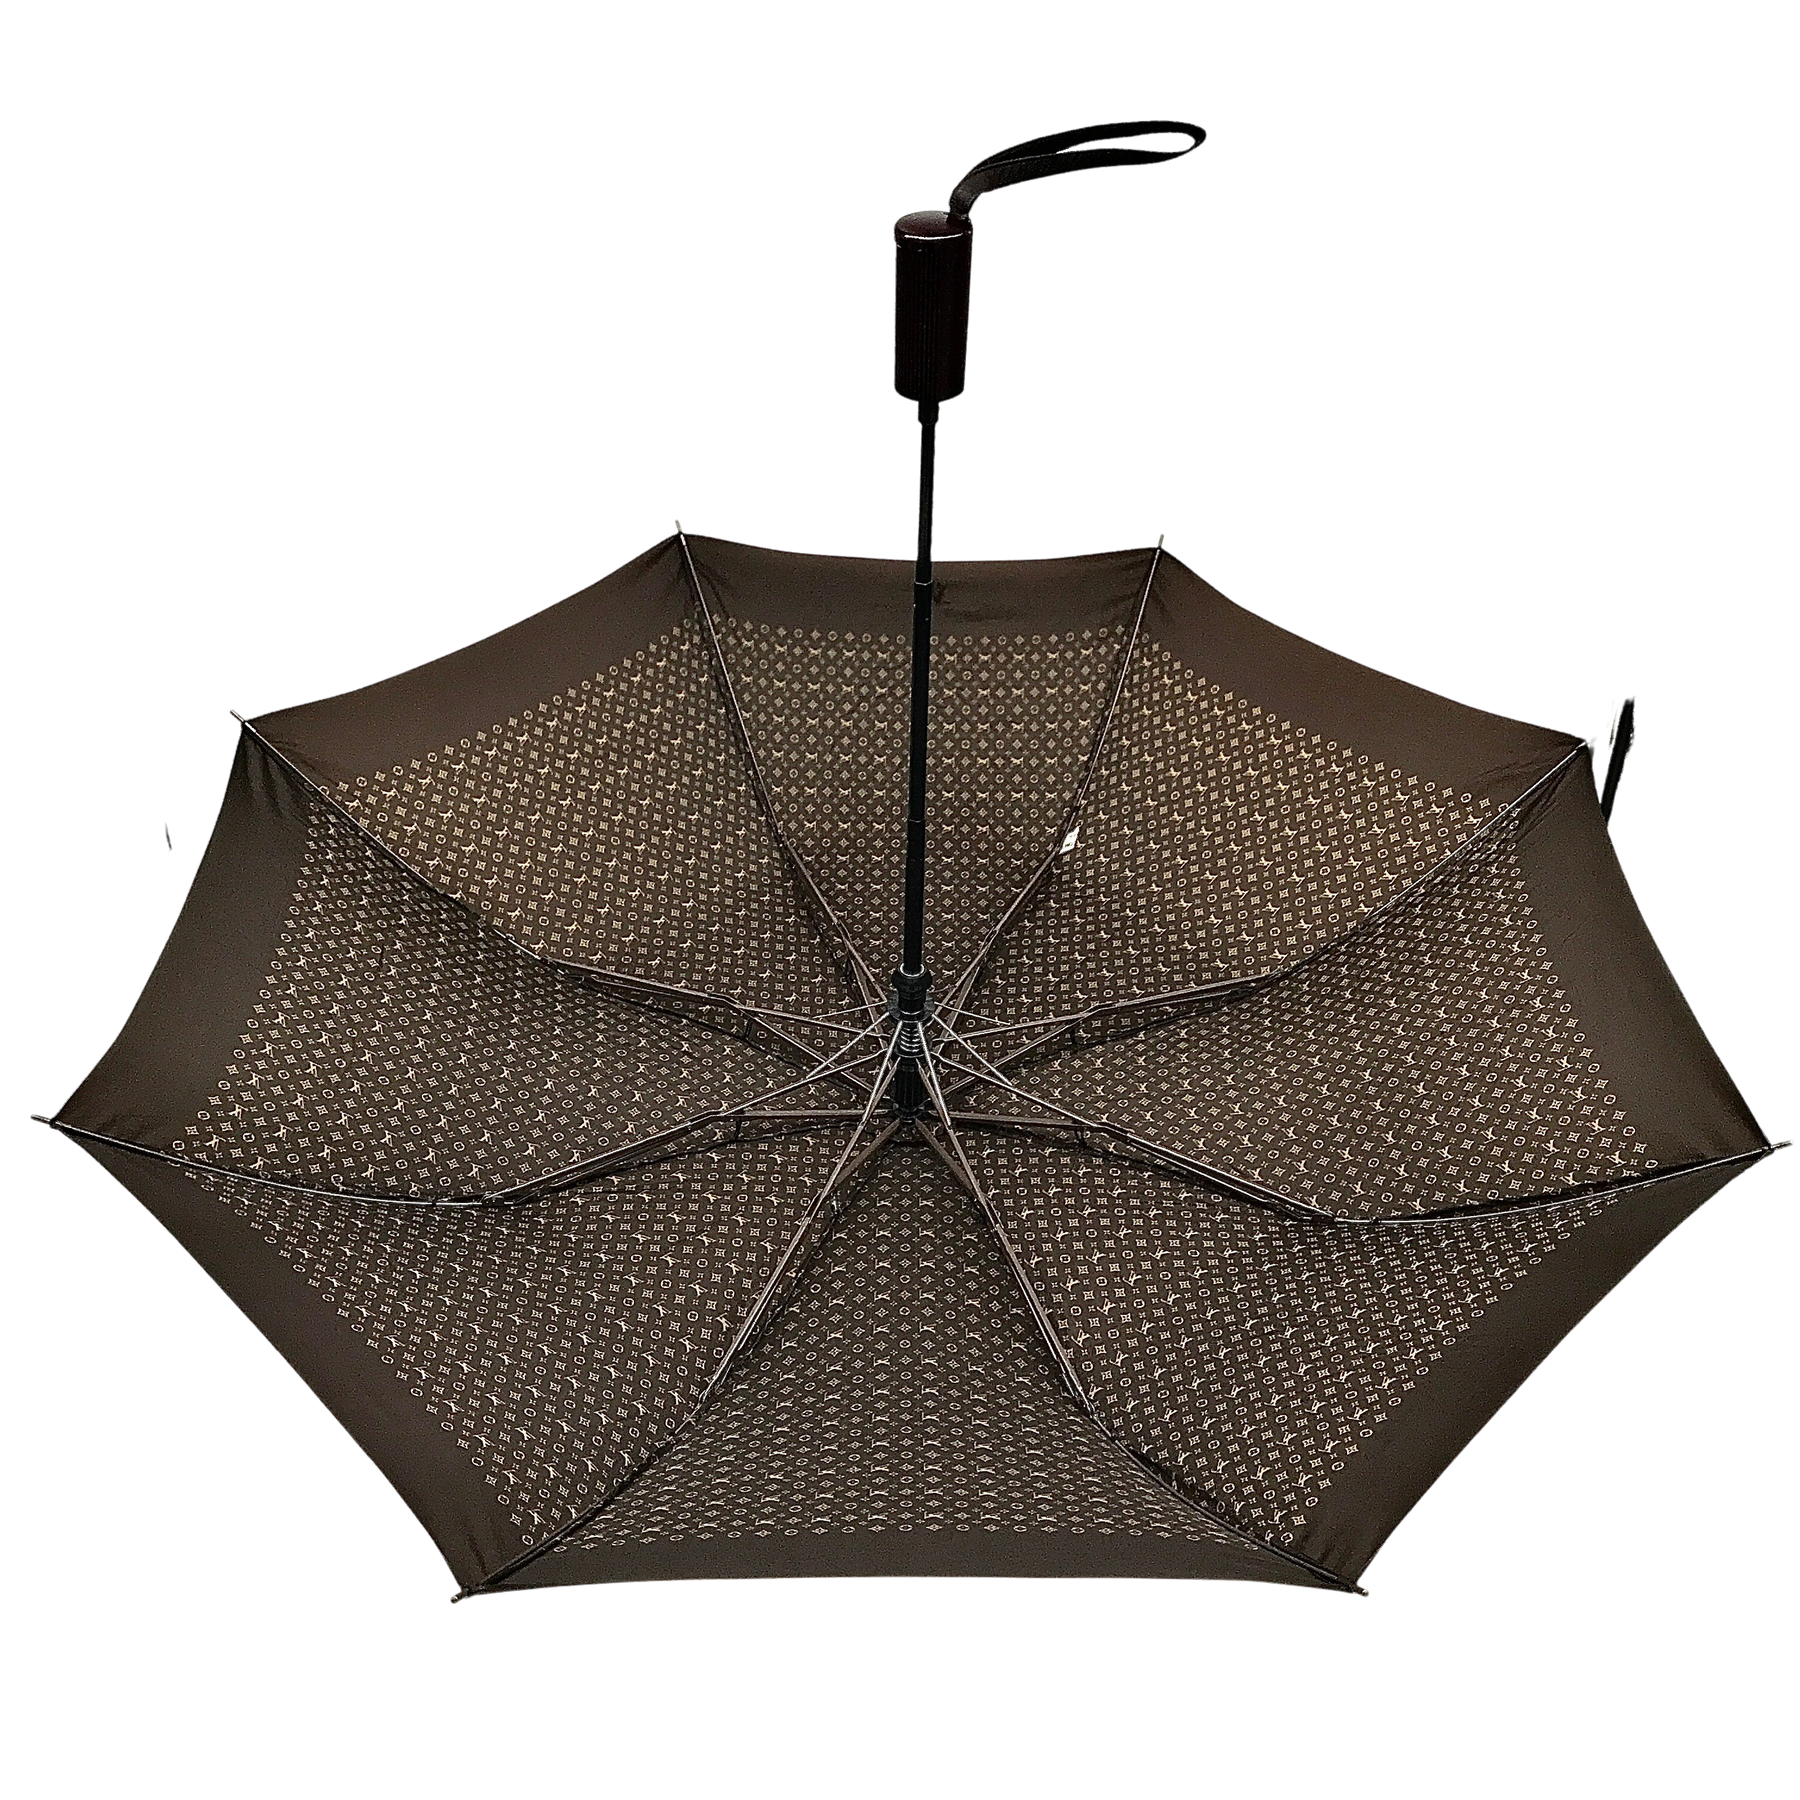 Sold at Auction: Louis Vuitton Monogram Umbrella